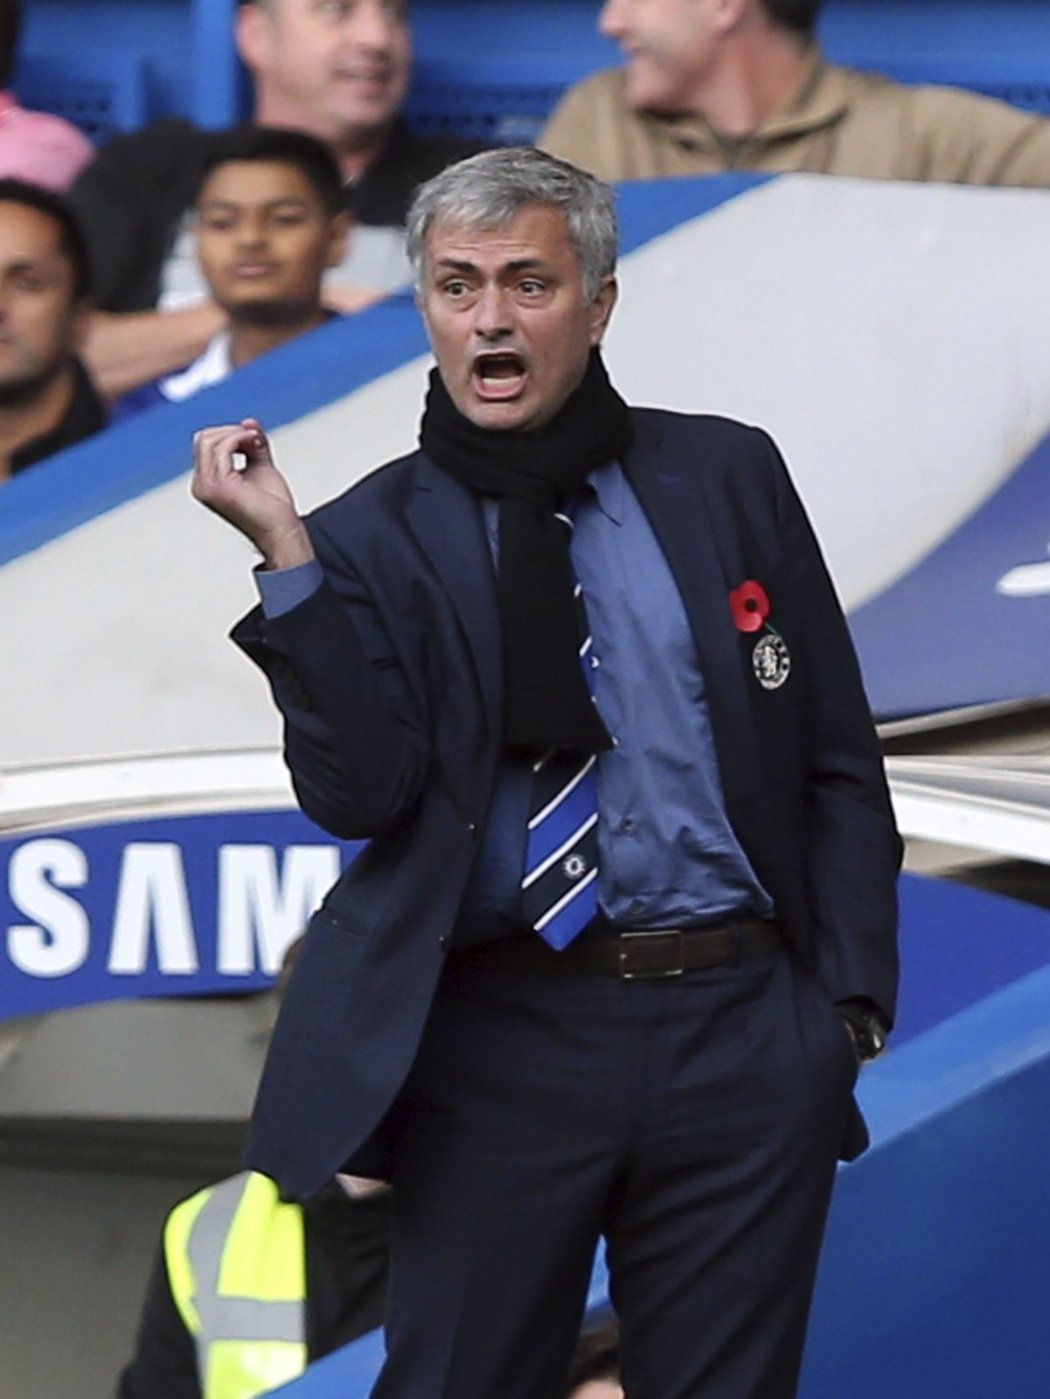 Manažer Chelsea Jose Mourinho gestikuluje během utkání s QPR. Chelsea vyhrála 2:1.